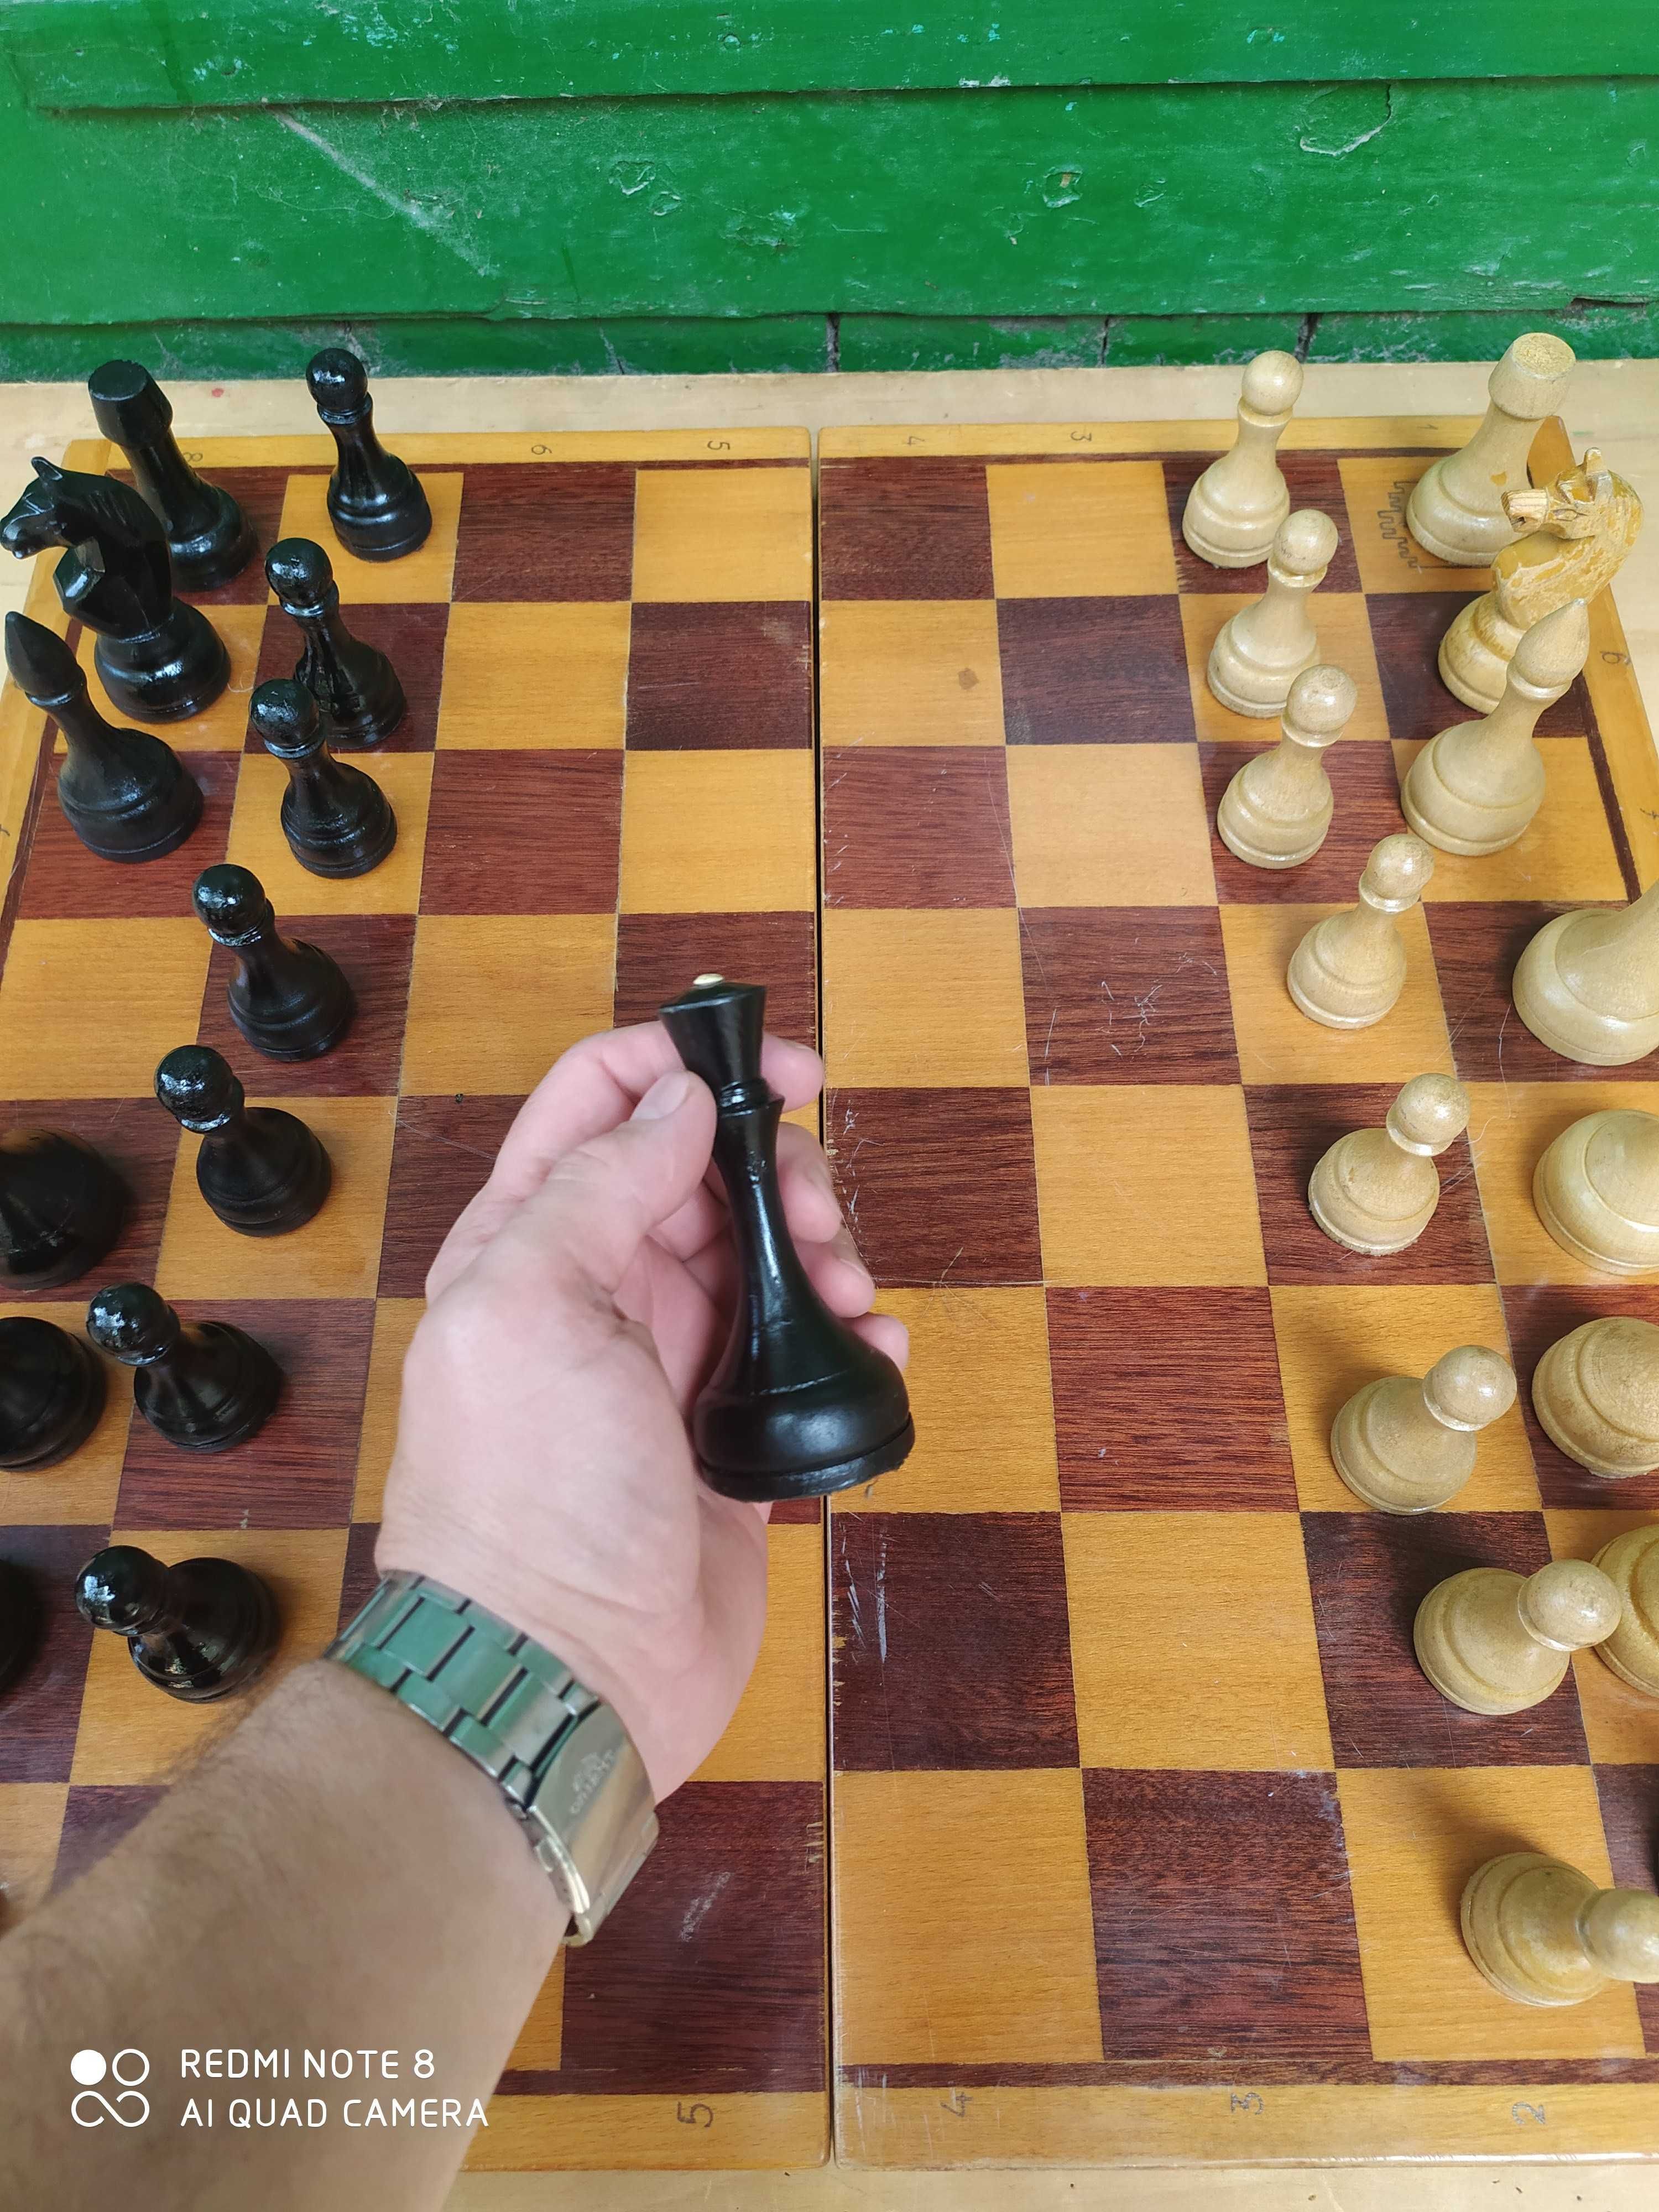 продам большие шахматы Черновцы